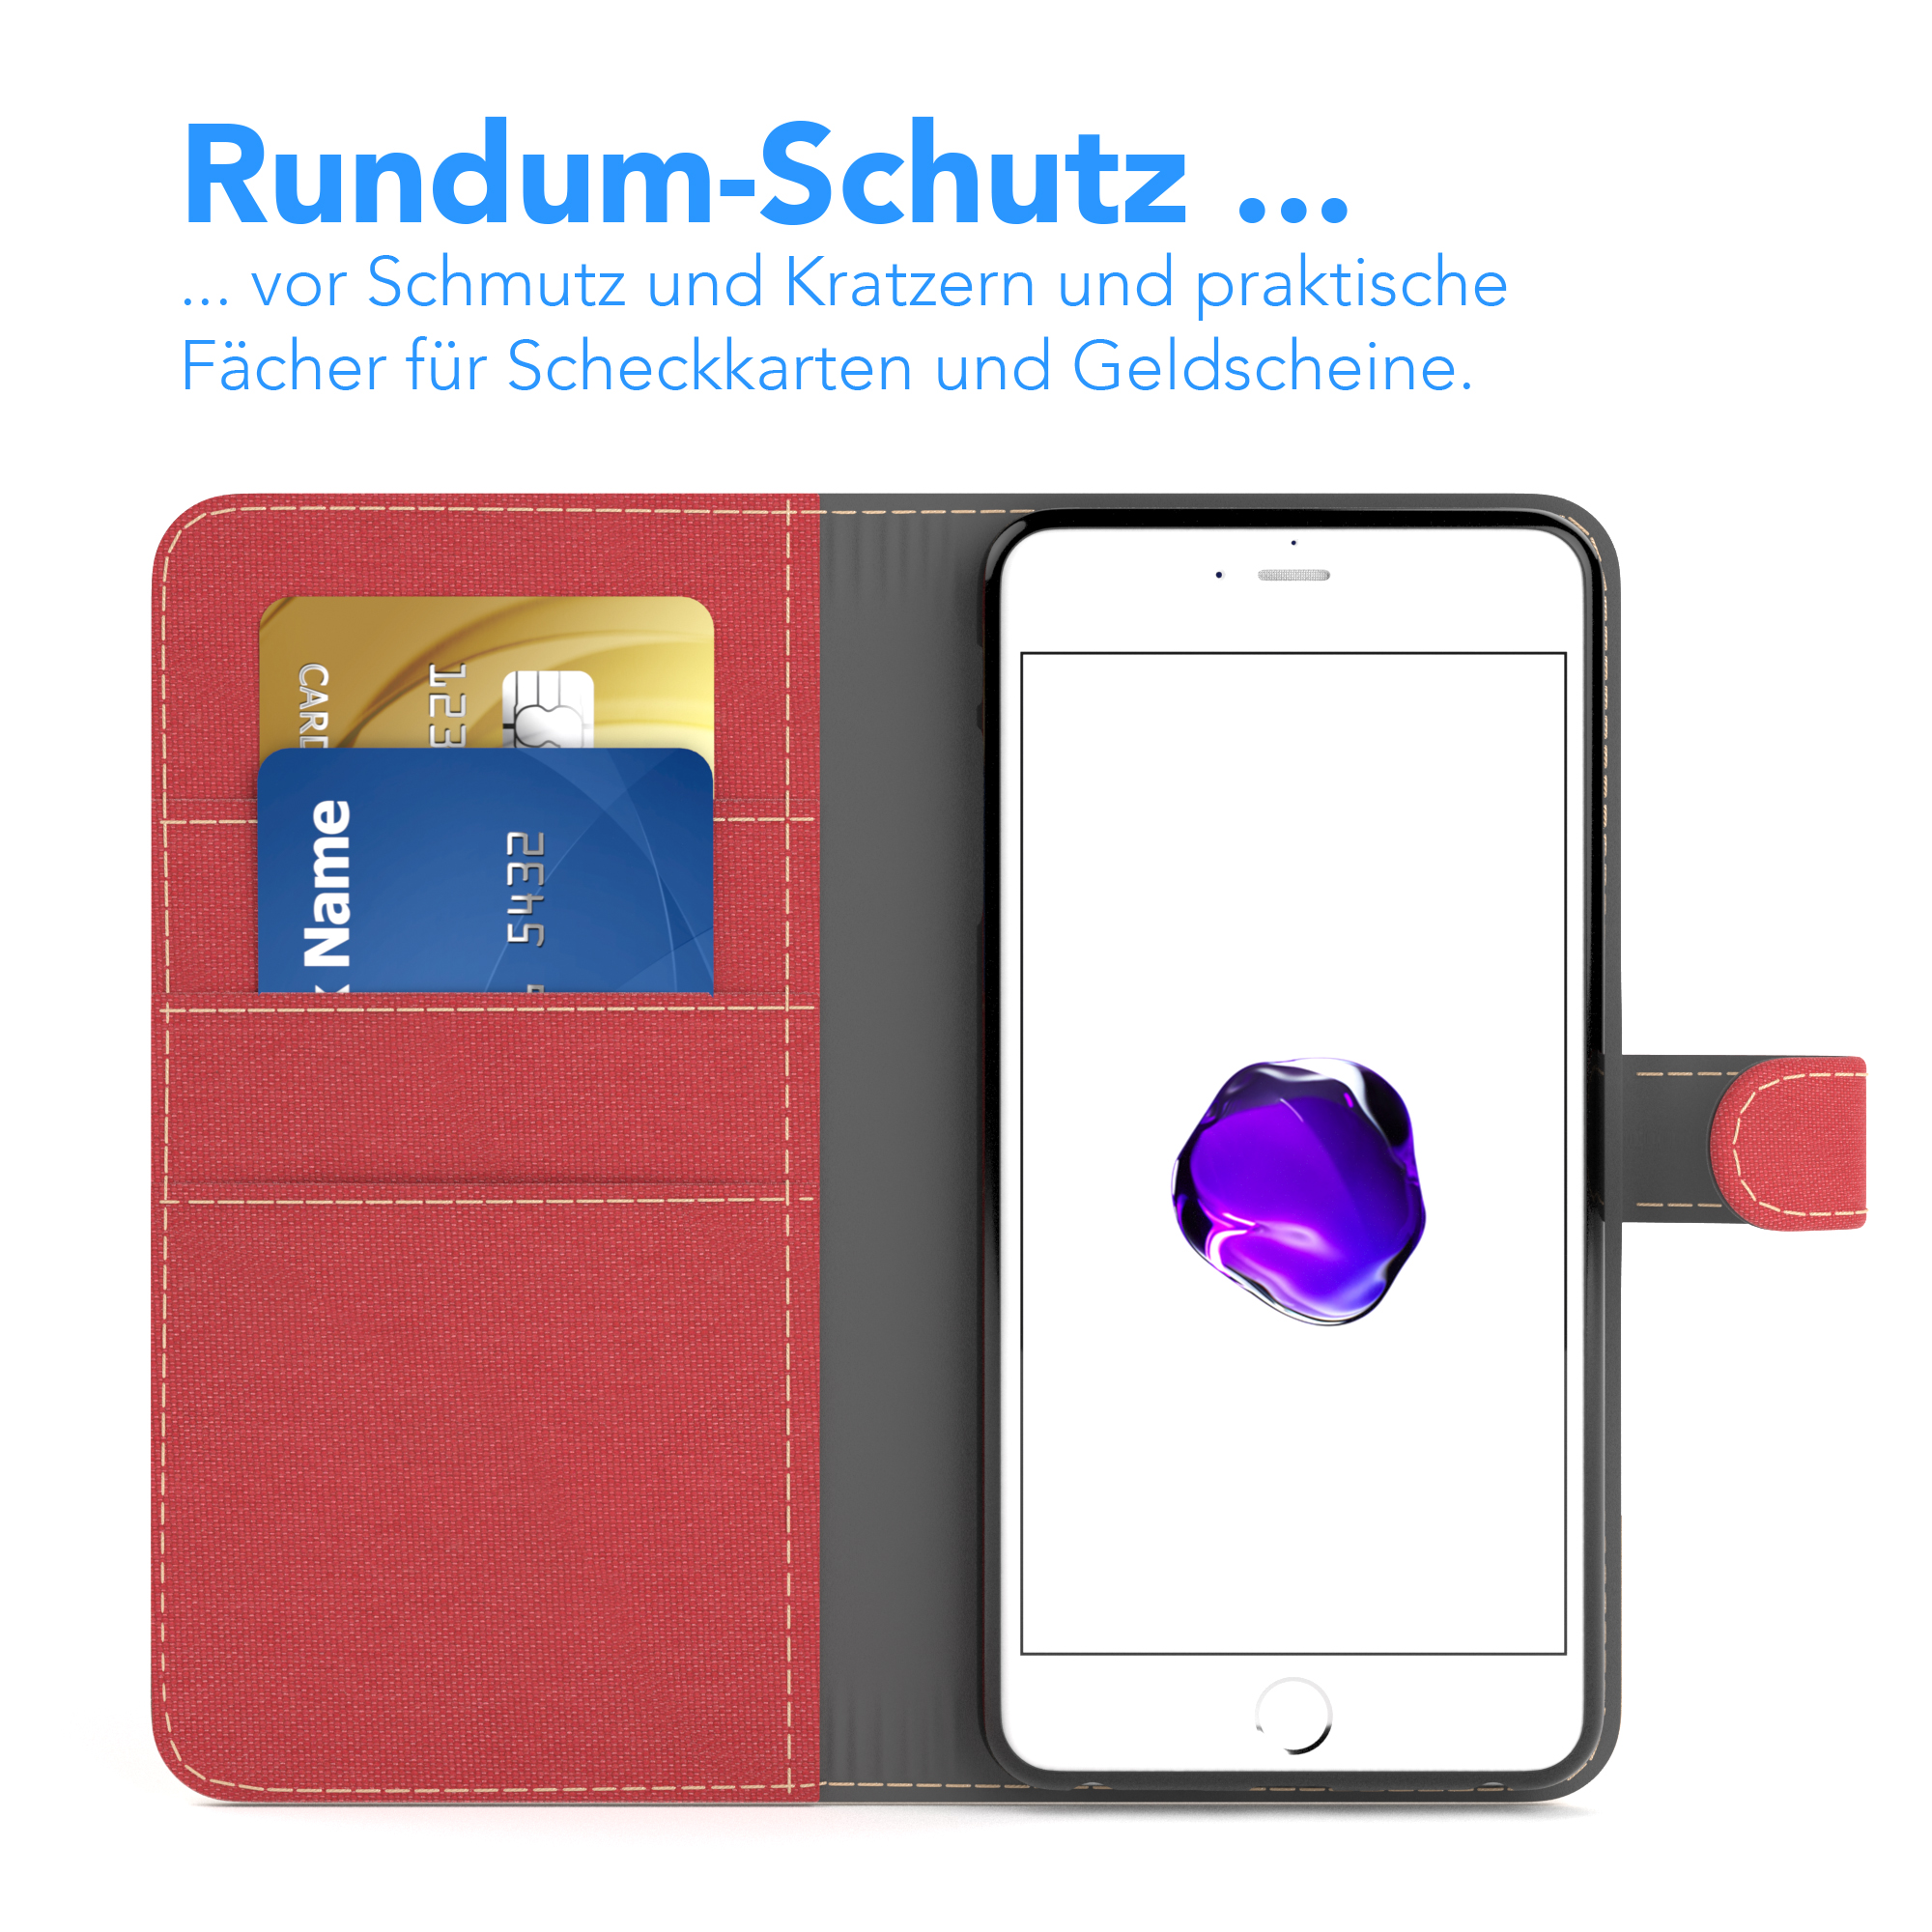 Klapphülle / Jeans Bookstyle Kartenfach, iPhone 8 EAZY Plus Apple, mit Plus, Rot 7 Bookcover, CASE